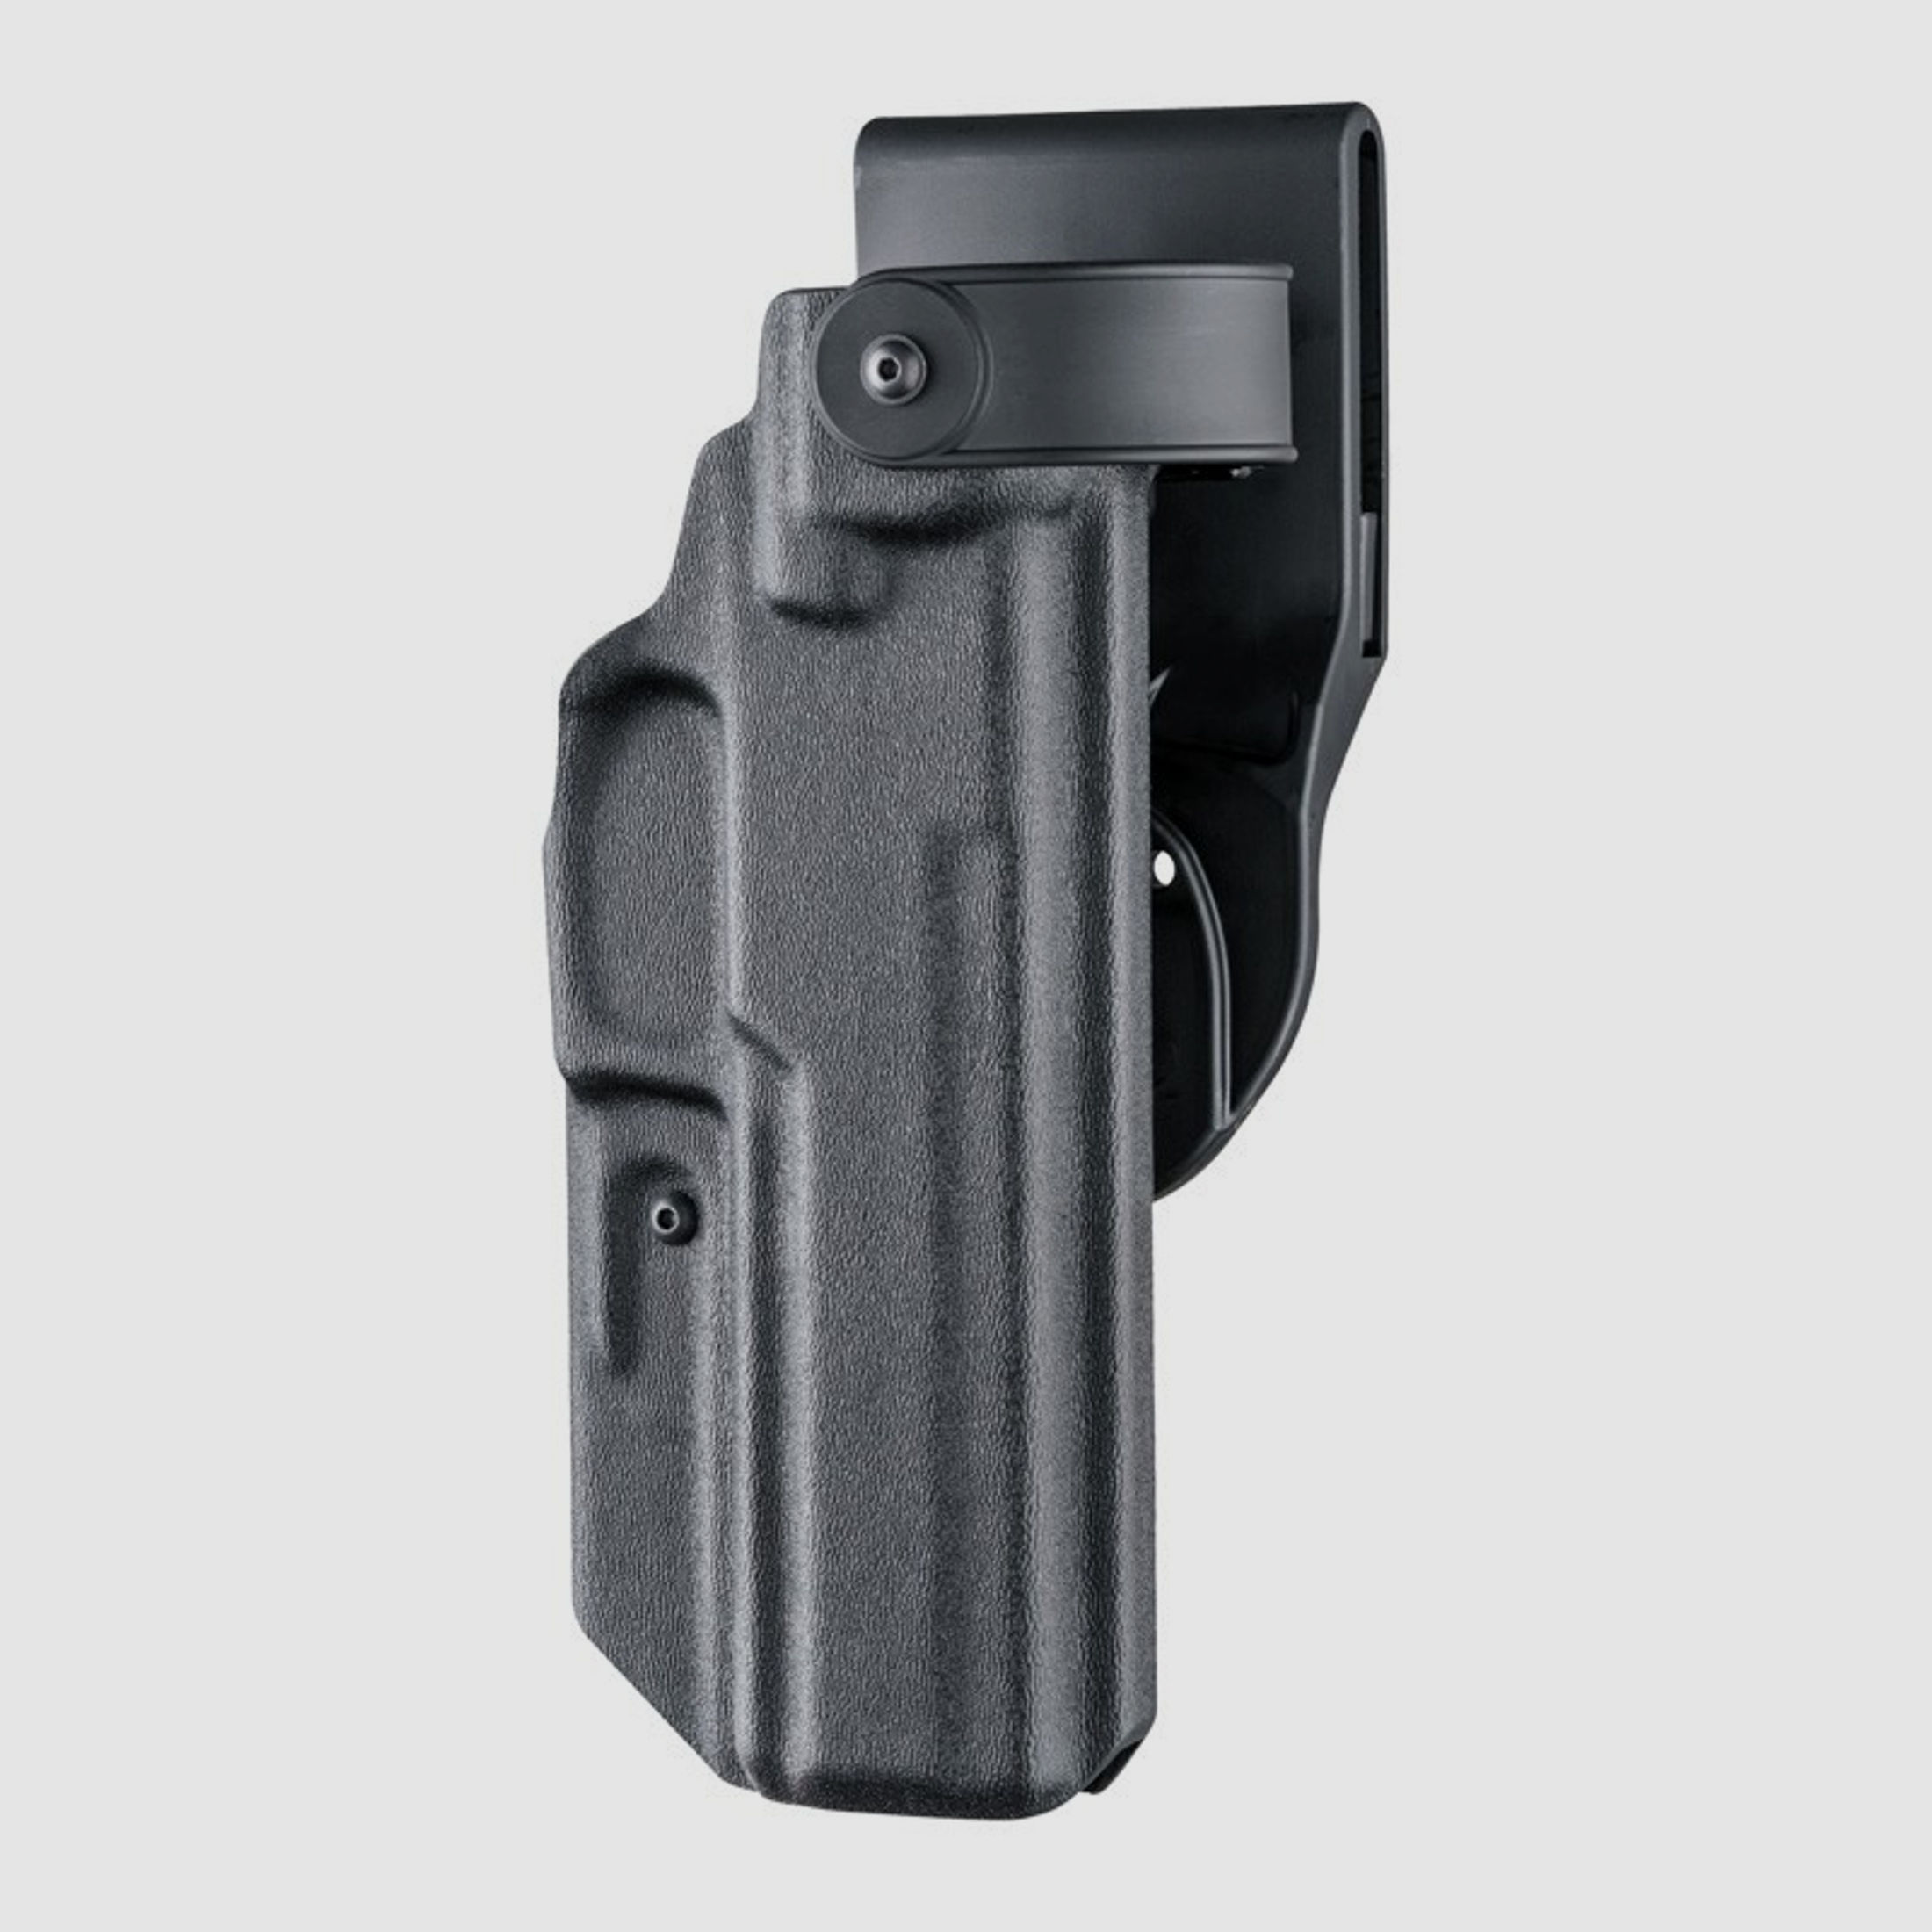 Dienstholster ARS Stage2 Carry Schwarz Level III Rechtshänder-Glock 17, 18, 22, 31, 37, 47